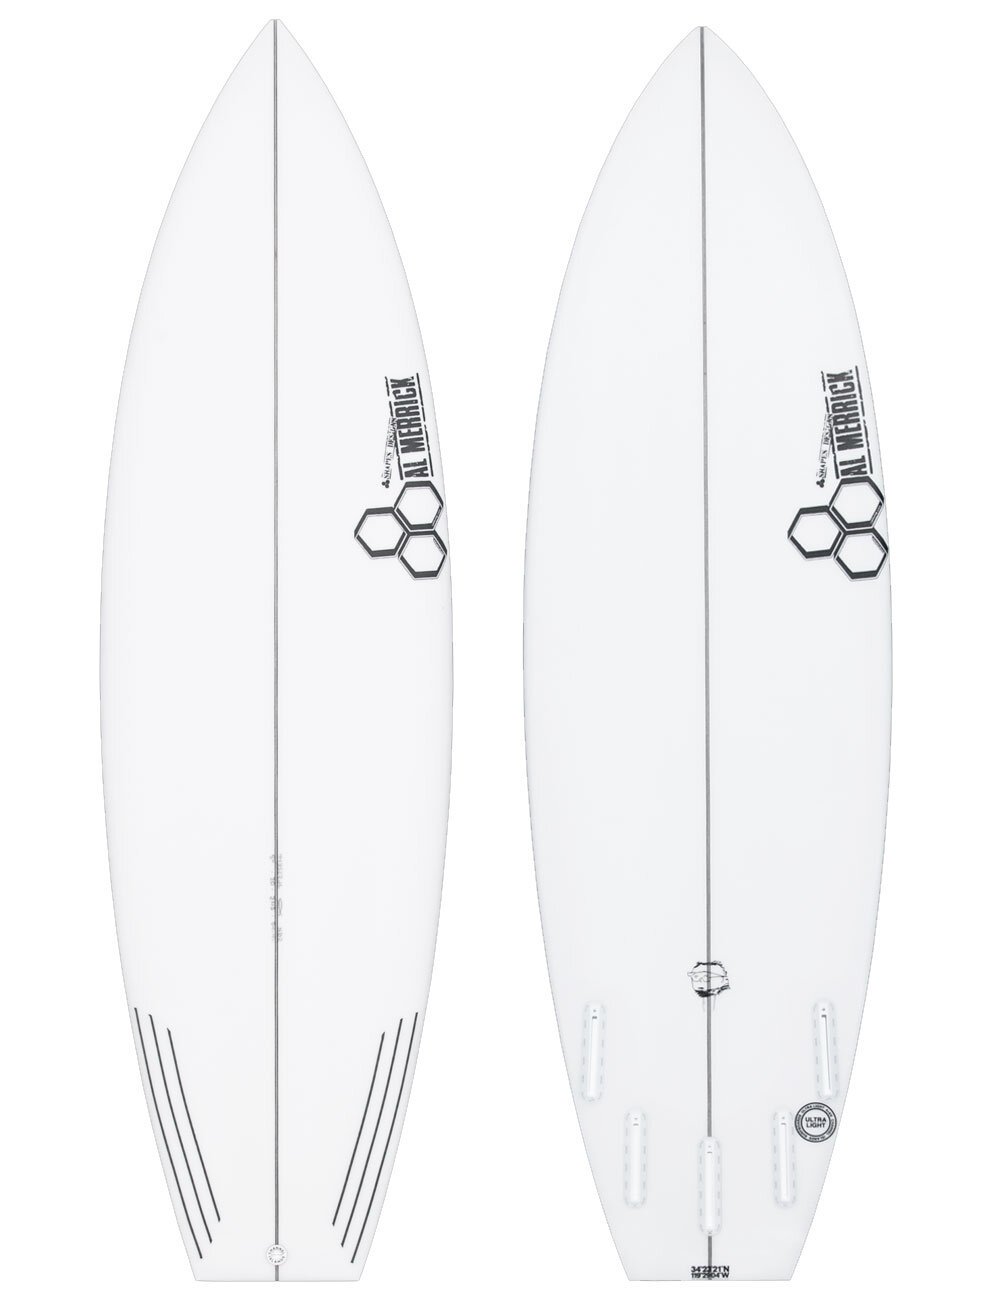 NECKBEARD 2 - Shop Shortboard Surfboards - $49 Shipping NZ Wide ...